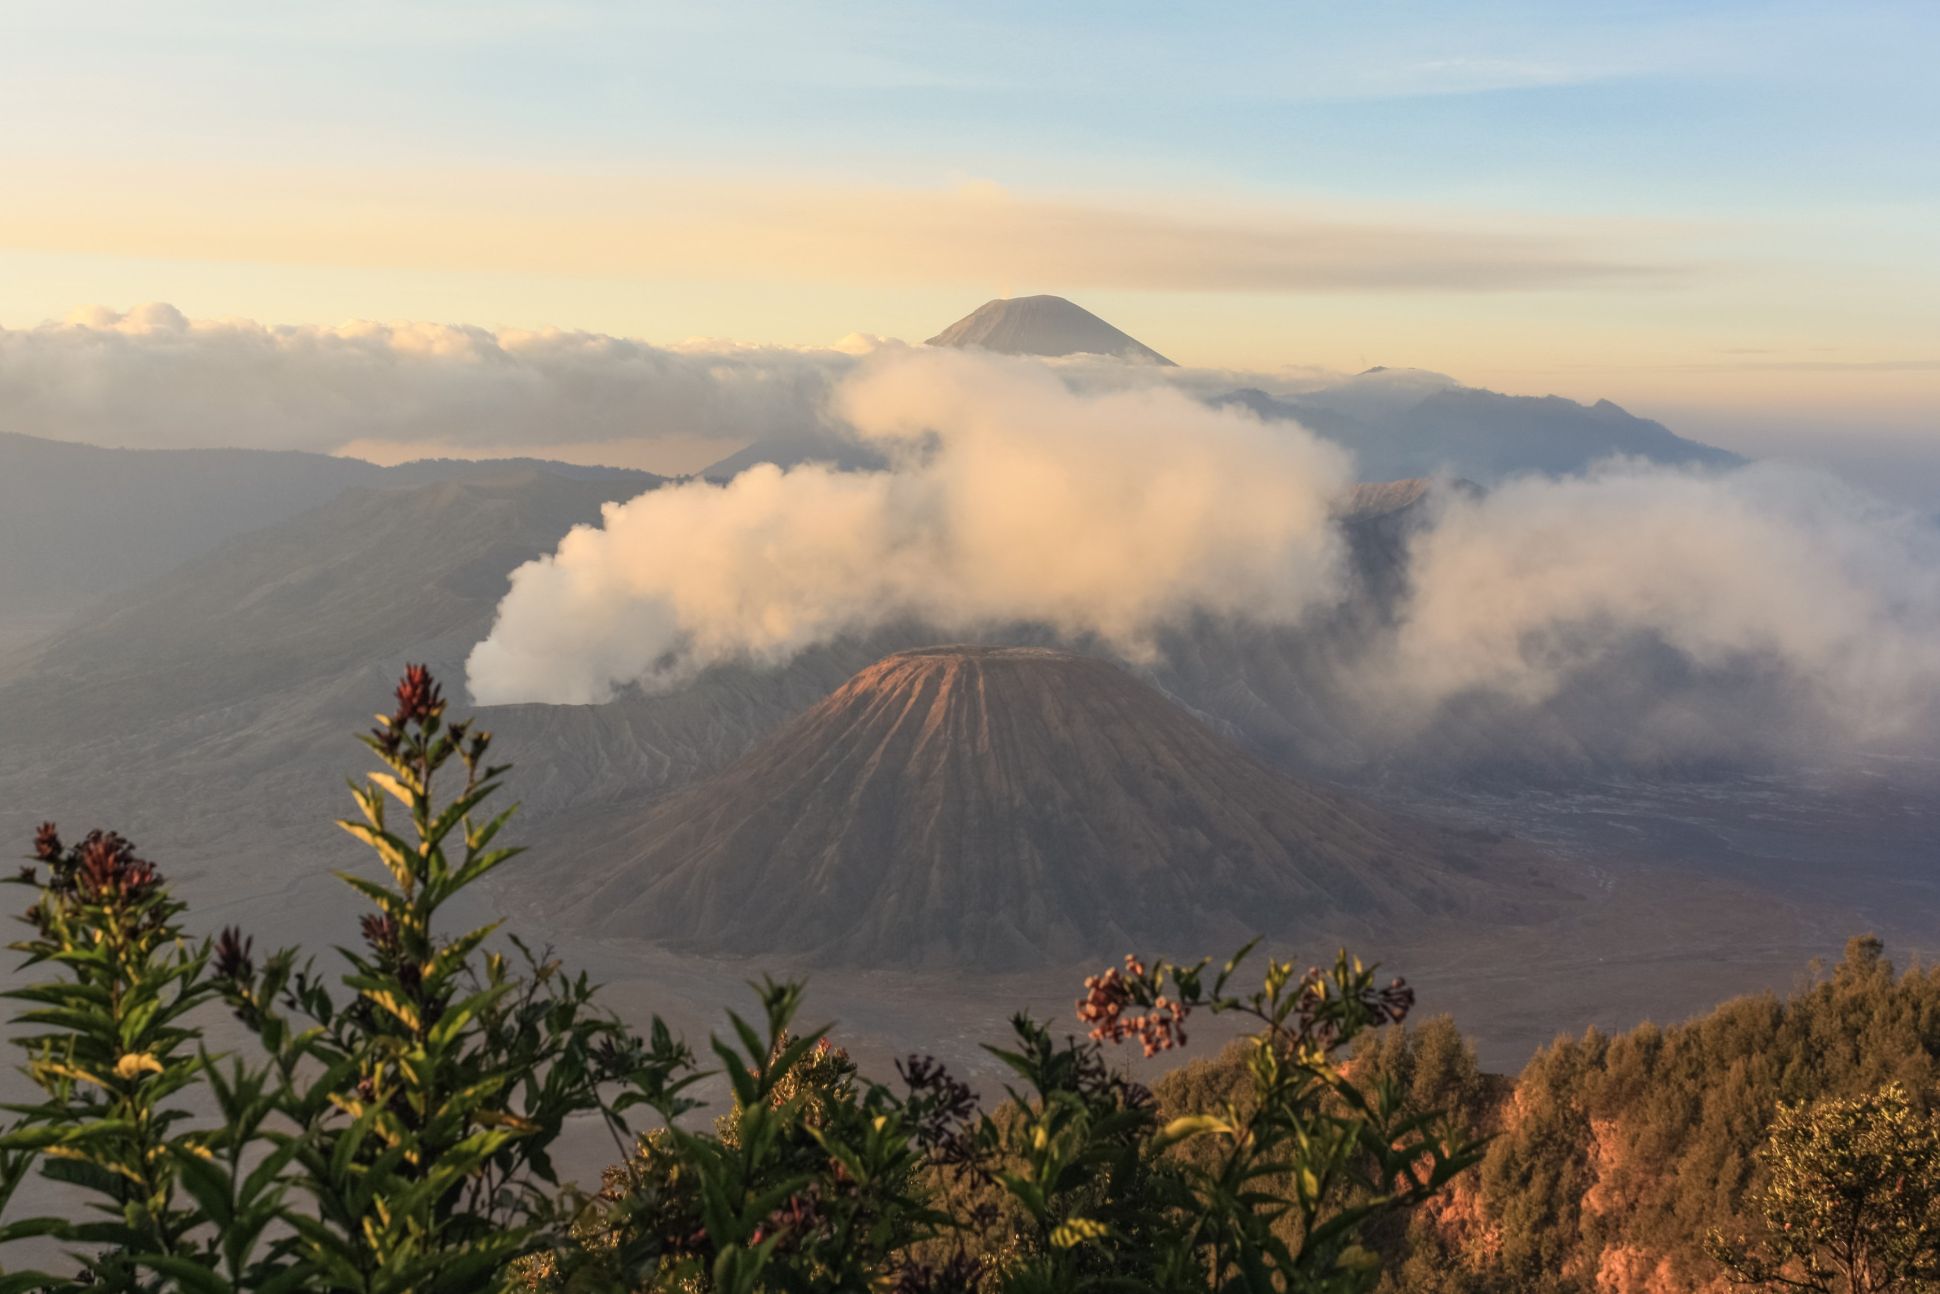 Volcanoes in East Java, Indonesia